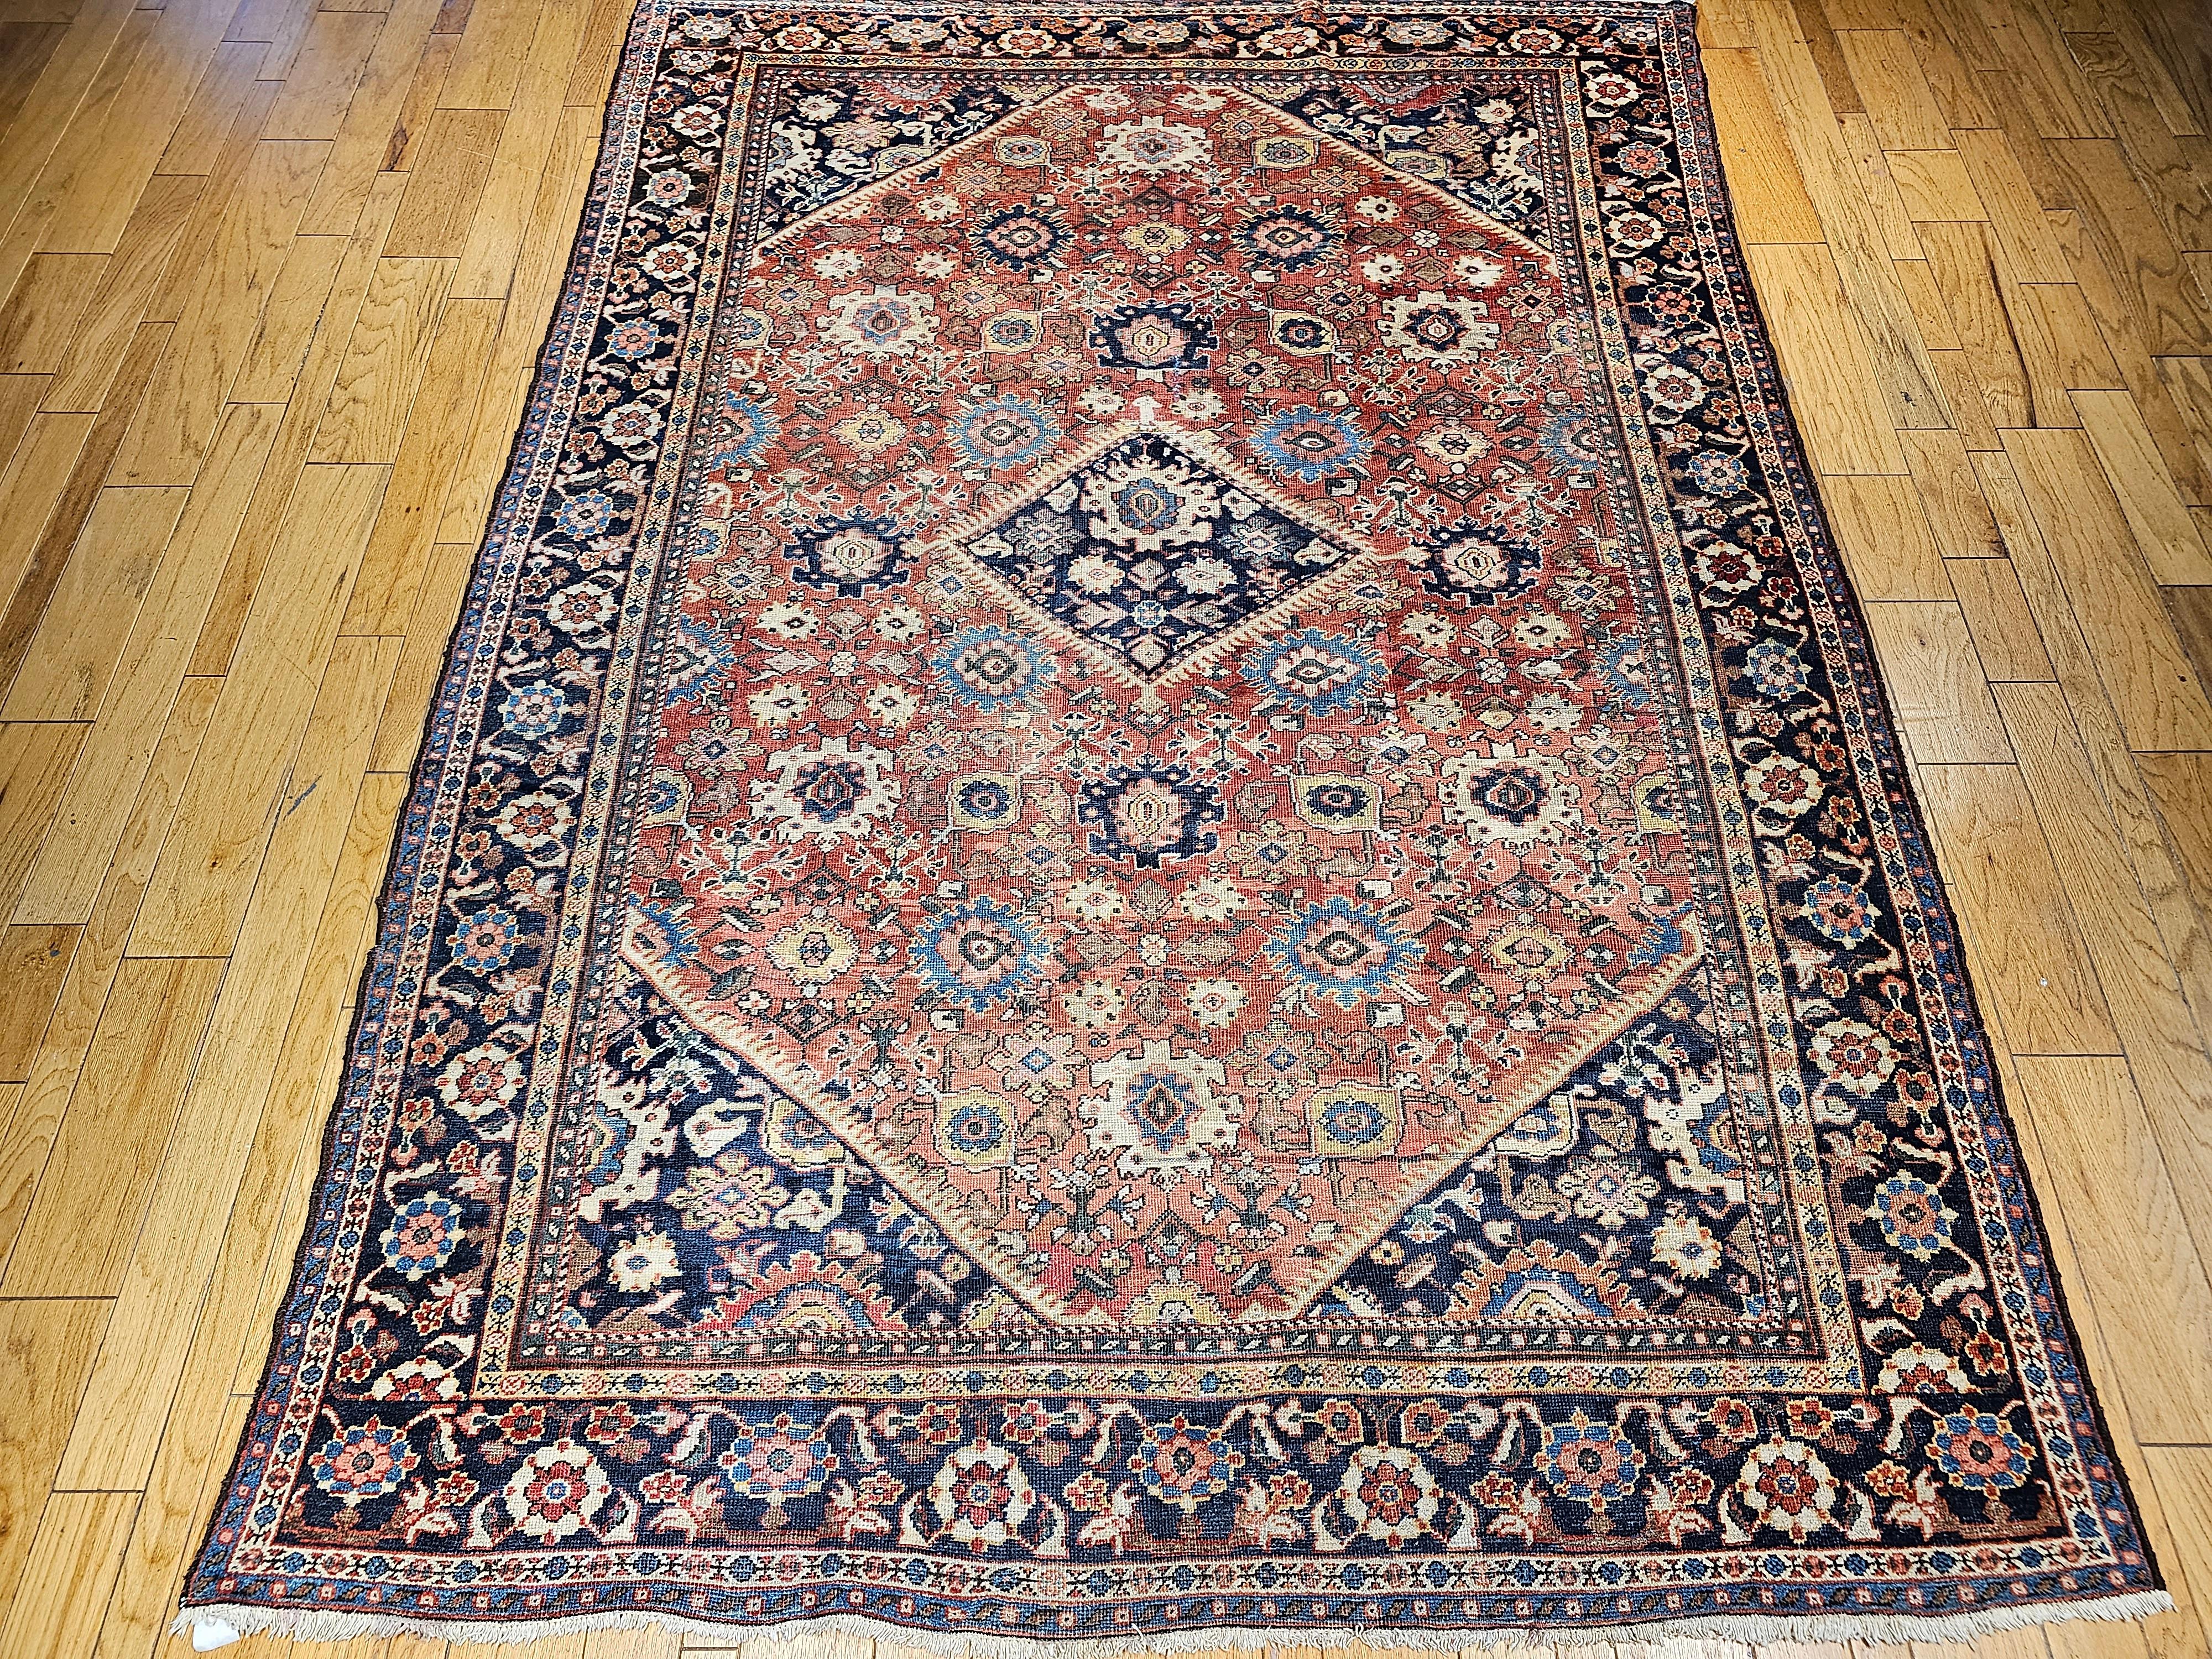 Die Sultanabad-Teppiche von Ziegler Mahal sind weltweit für ihre zeitlose Schönheit bekannt. Dieses antike Mahal Sultanabad aus dem späten 19. Jahrhundert hat ein Gesamtmuster mit einem rostfarbenen Feld und einer blauen Bordüre. Die großen Formen